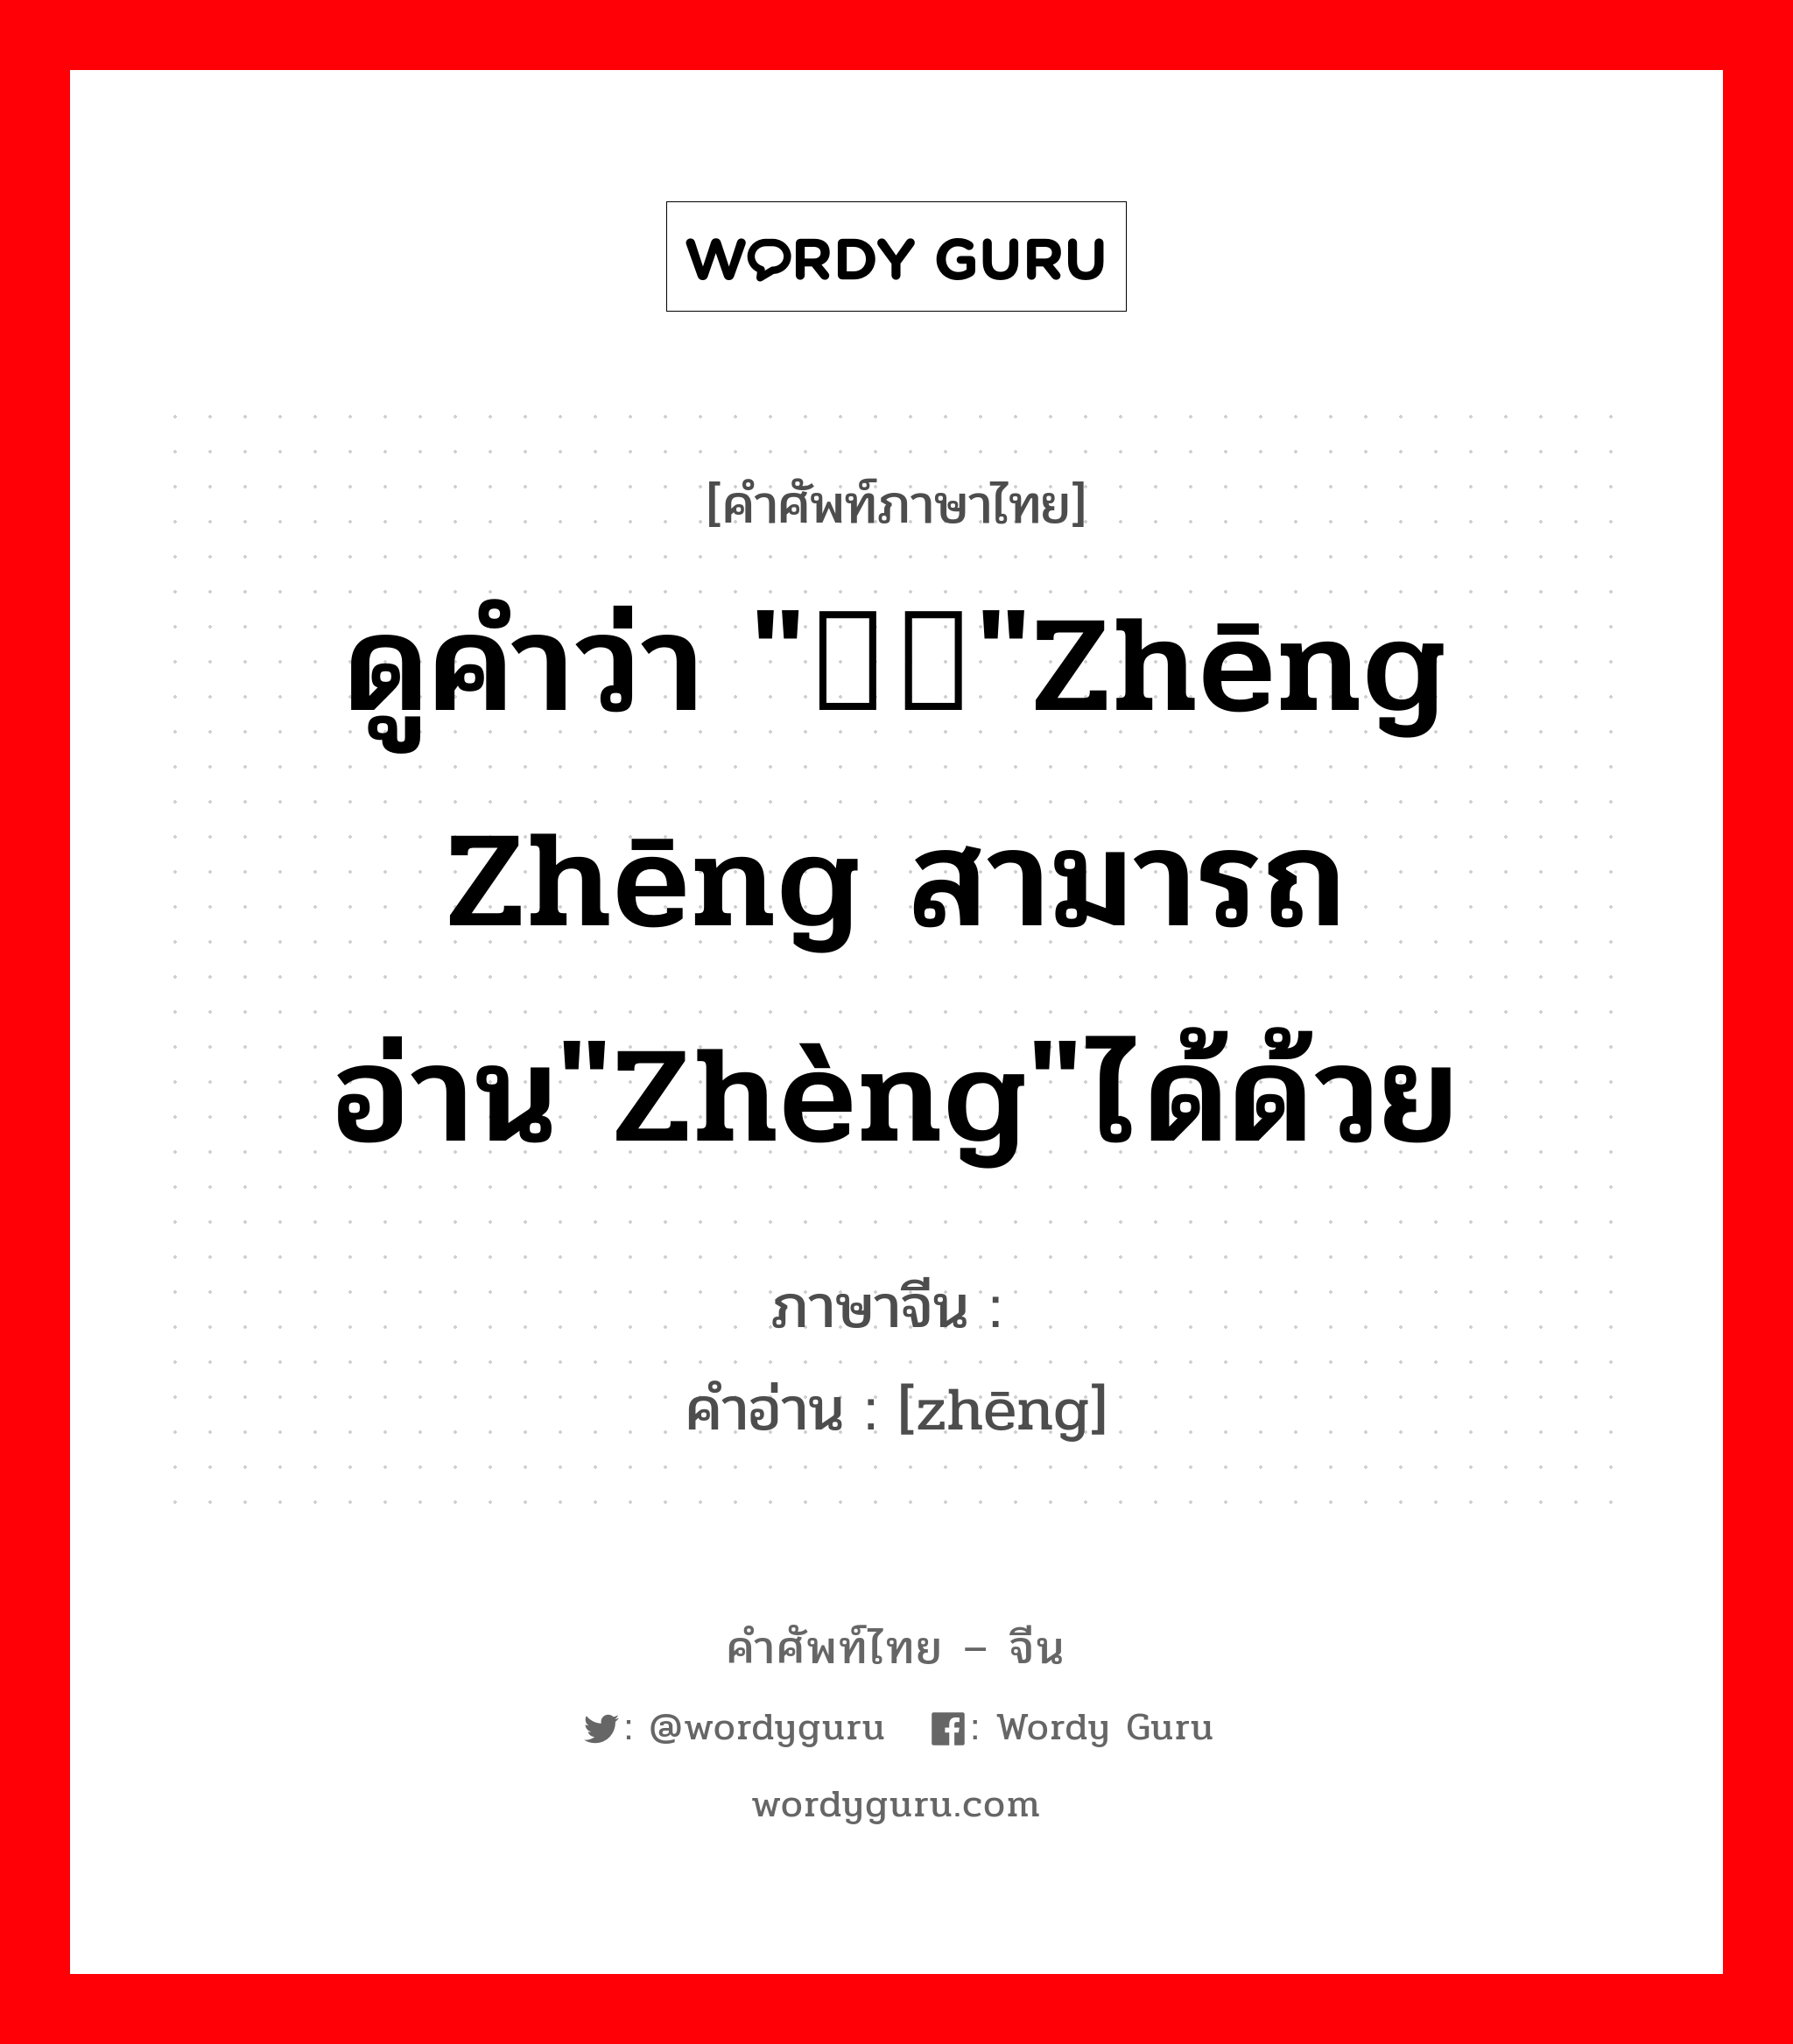 ดูคำว่า "铮铮"zhēng zhēng สามารถอ่าน"zhèng"ได้ด้วย ภาษาจีนคืออะไร, คำศัพท์ภาษาไทย - จีน ดูคำว่า "铮铮"zhēng zhēng สามารถอ่าน"zhèng"ได้ด้วย ภาษาจีน 铮 คำอ่าน [zhēng]